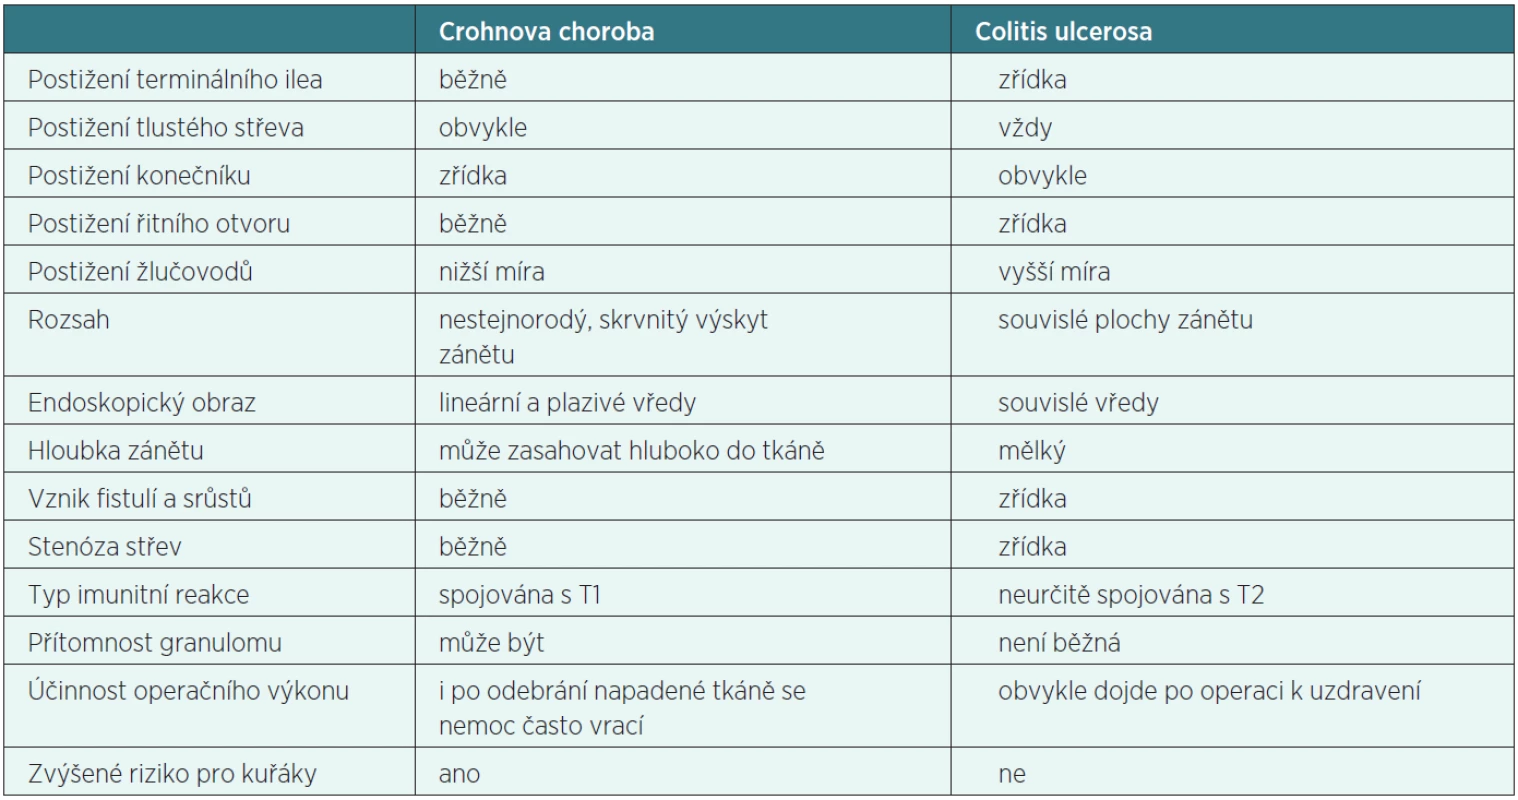 Srovnání různých faktorů sledovaných v případě Crohnovy choroby a colitis ulcerosa